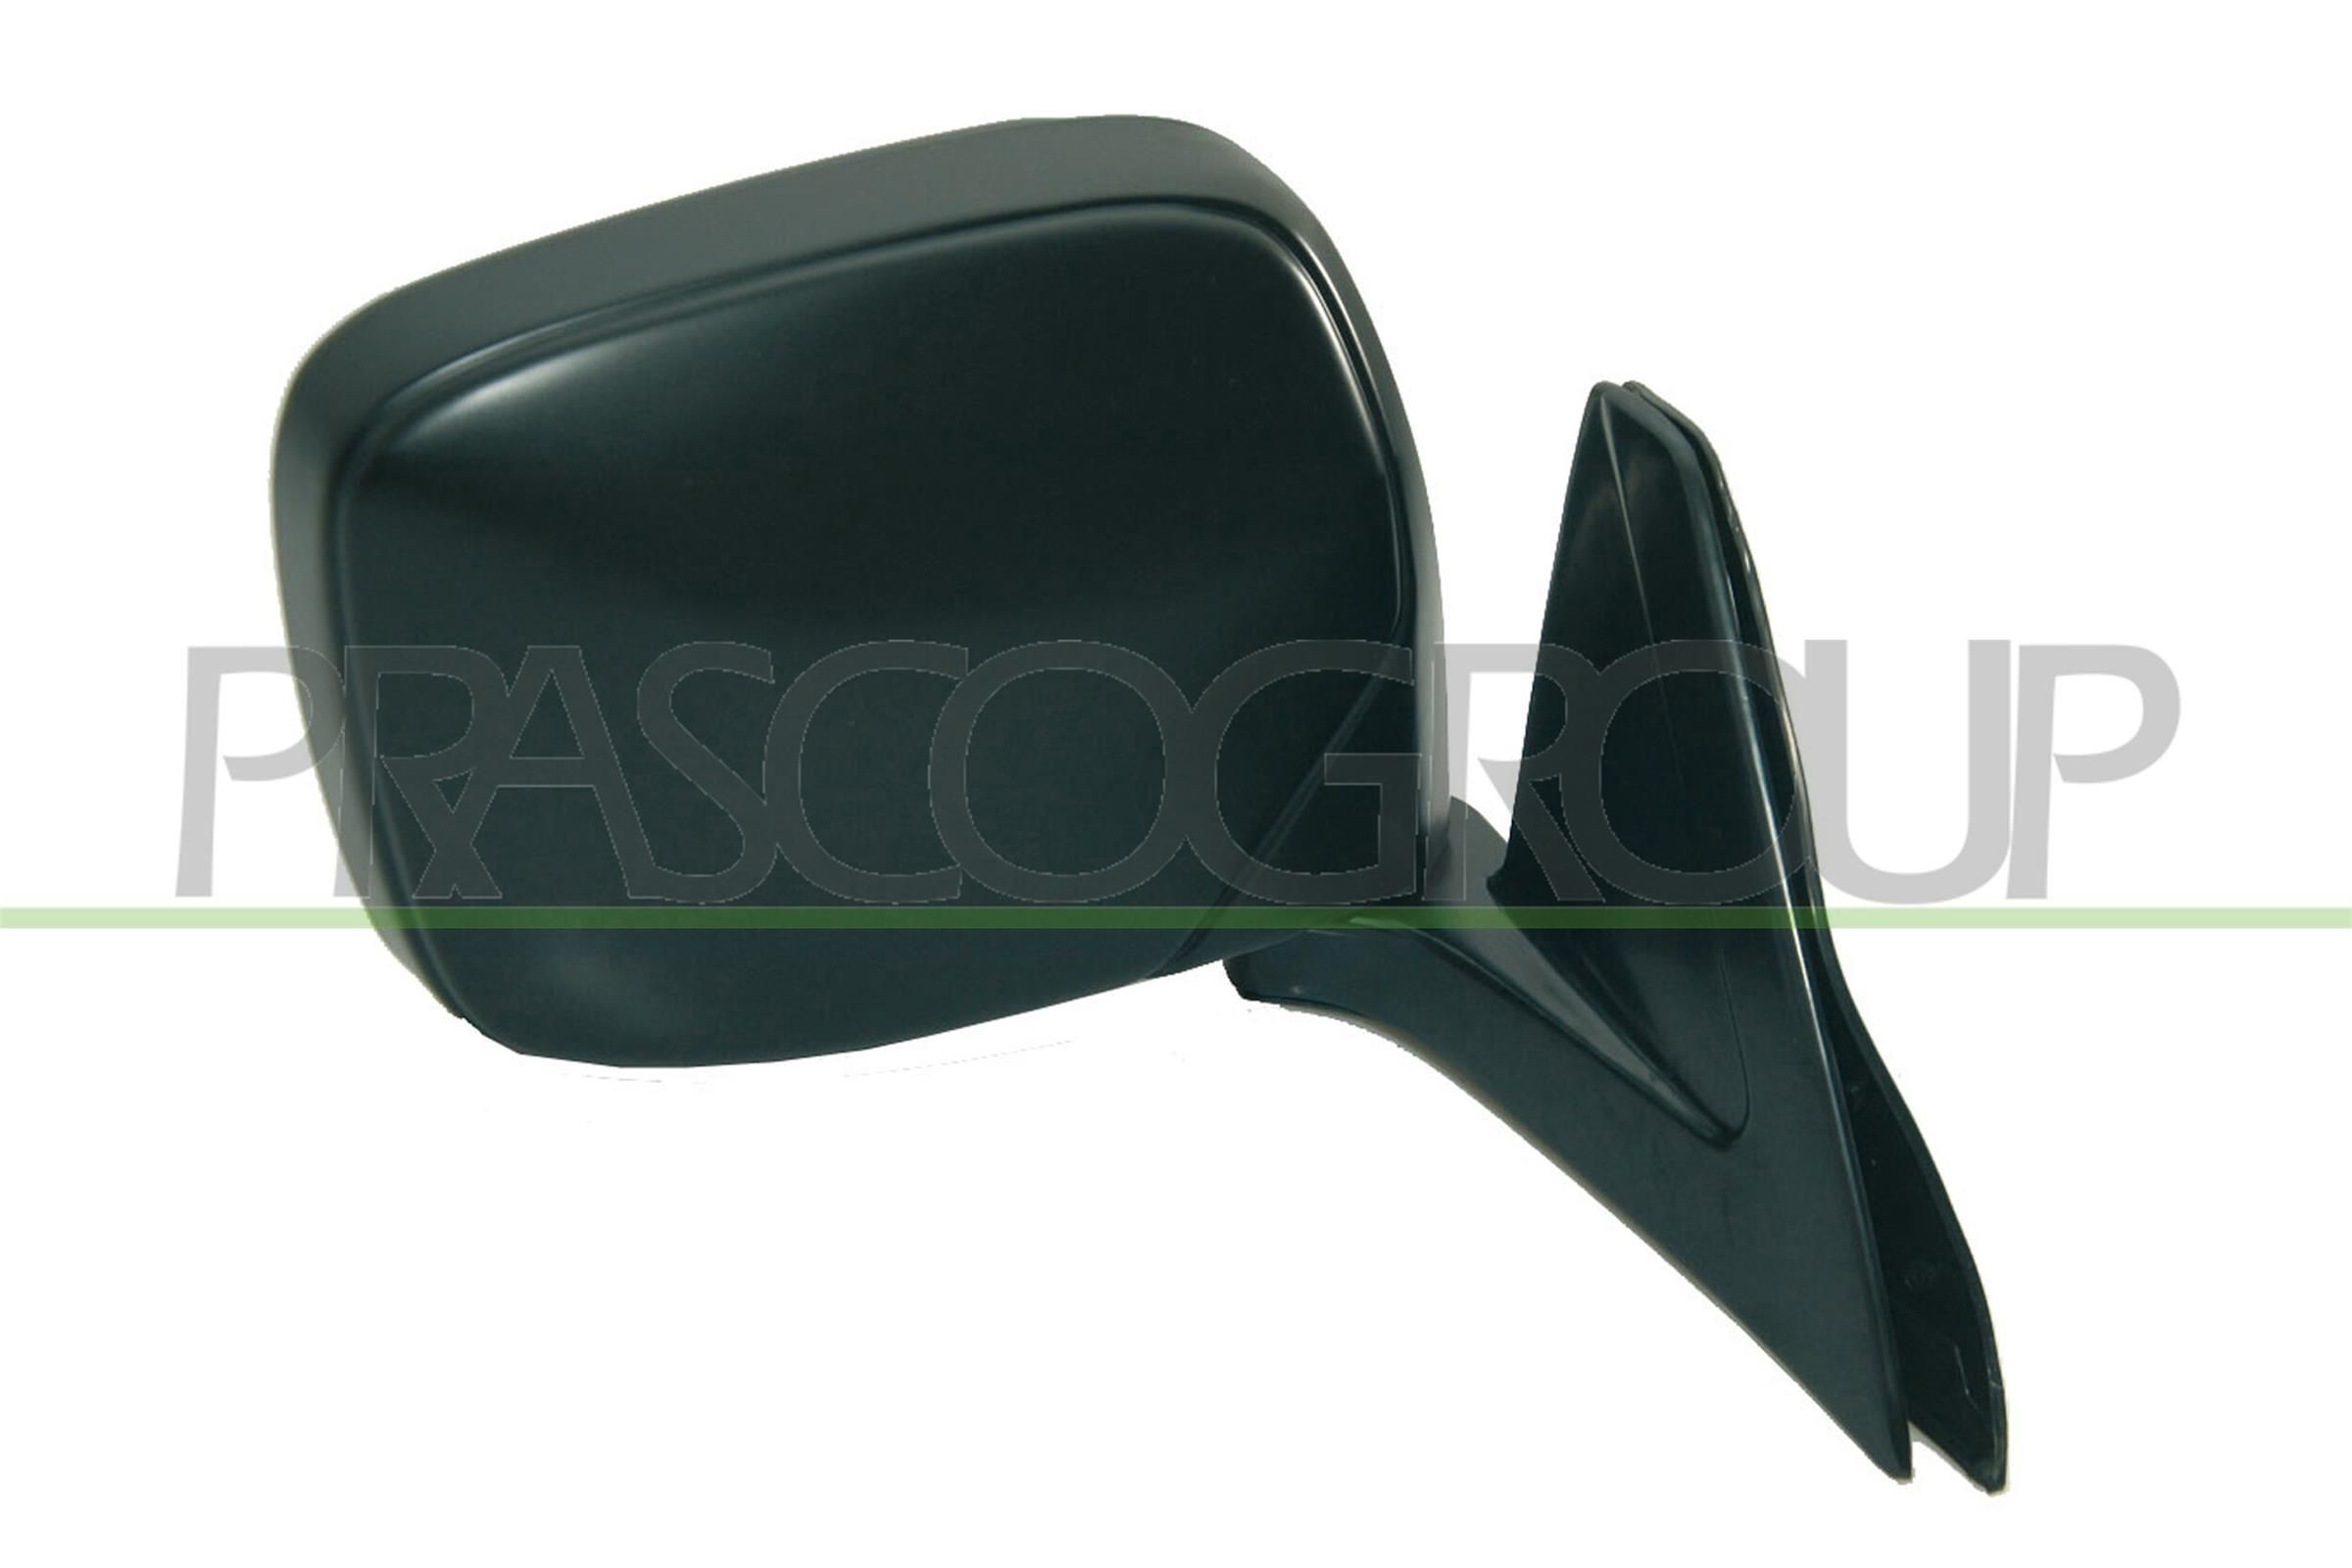 MB8177113 Espejo retrovisor derecha, negro, manual, ajustable para Mitsubishi L200 ▷ precio y opinión